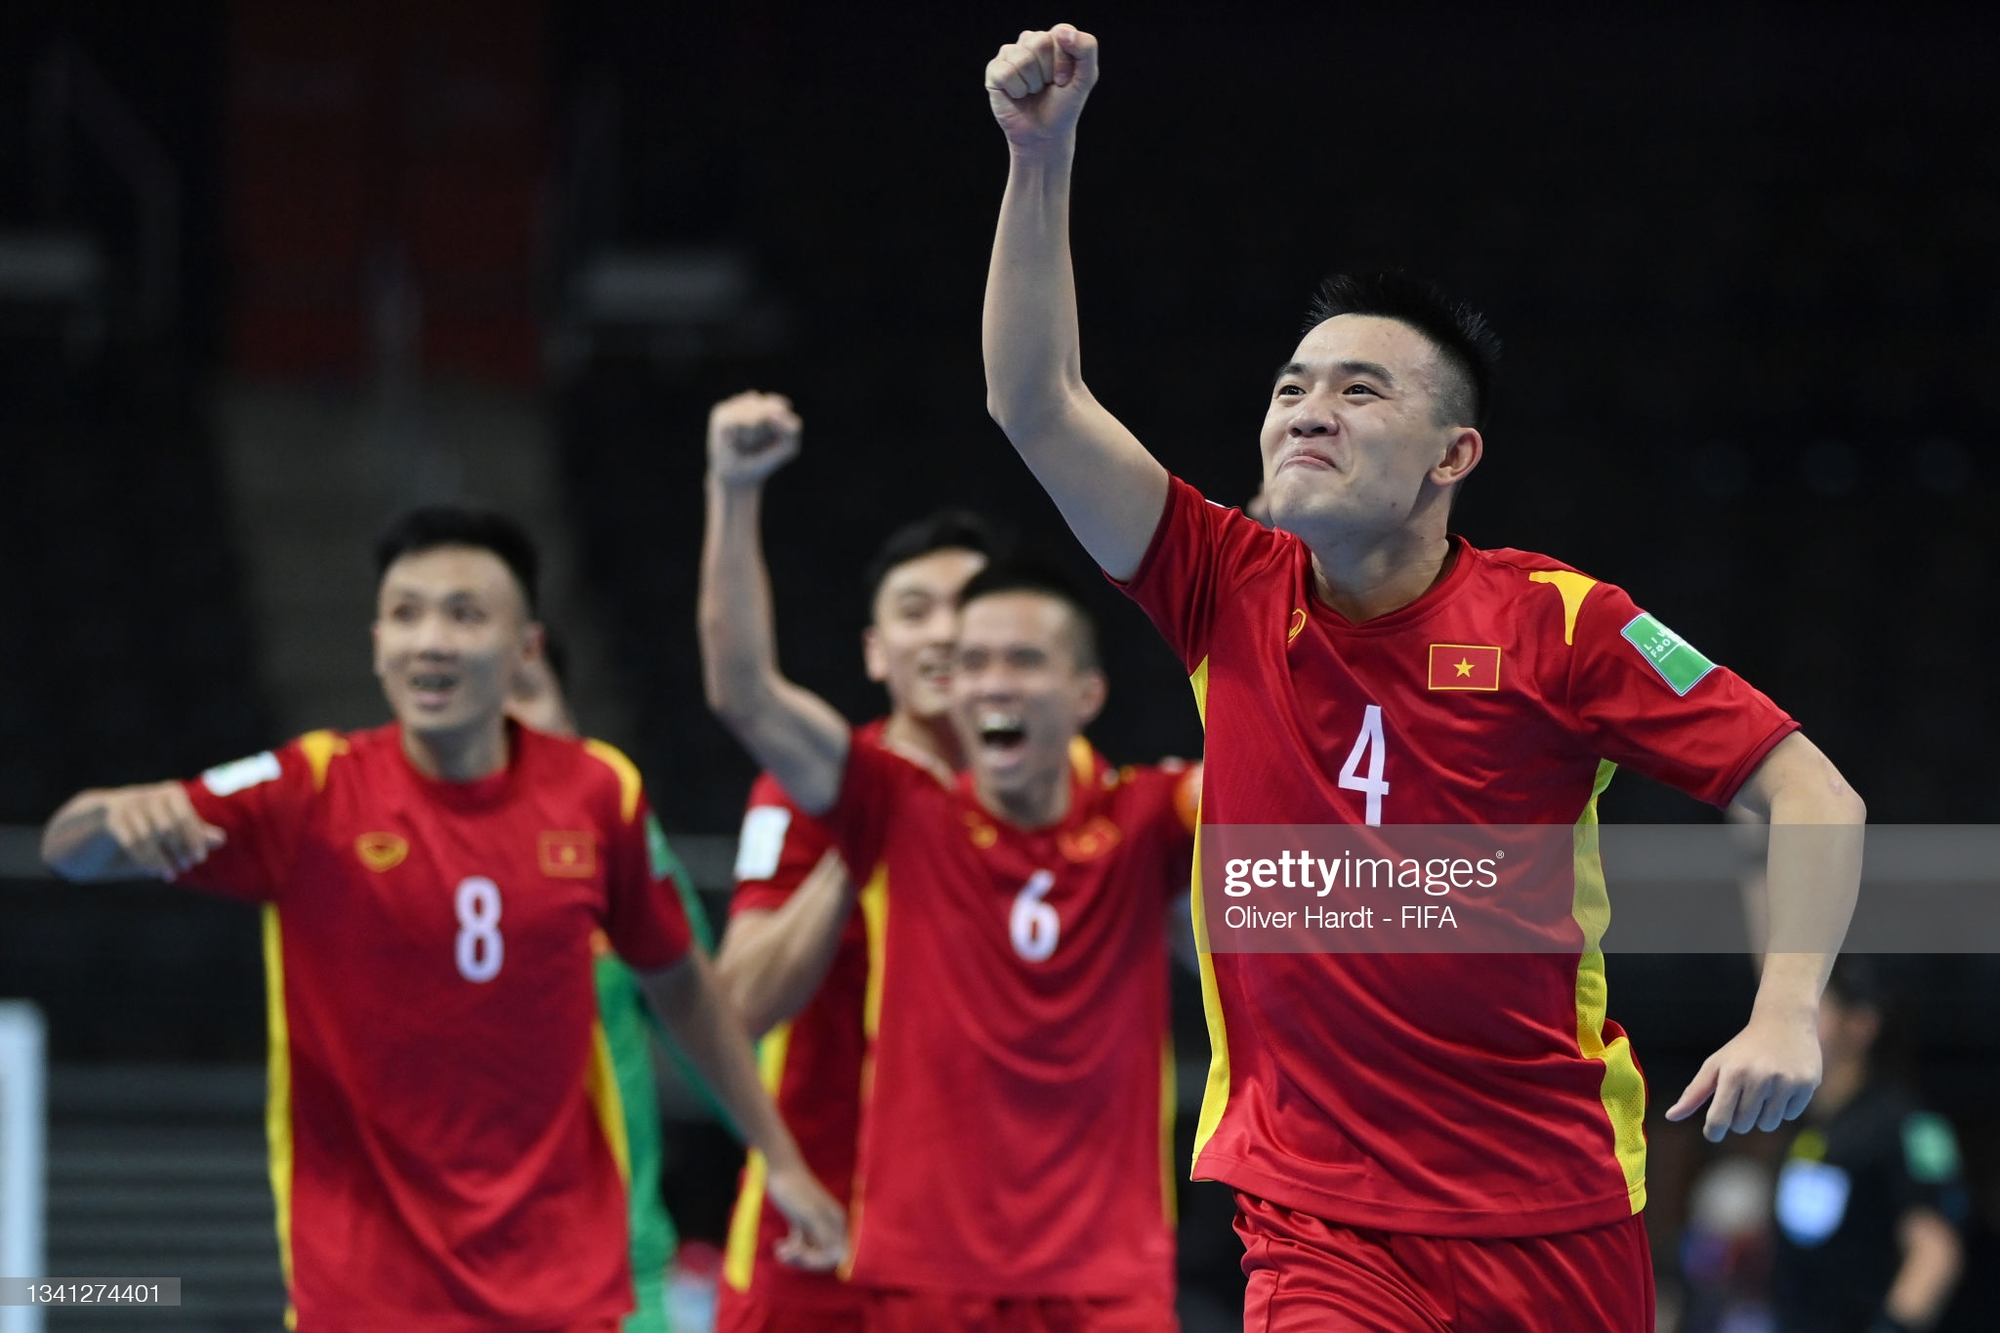 ĐT Việt Nam vượt qua Iran, Nhật Bản, bóng đá châu Á thiết lập cột mốc lịch sử tại sân chơi World Cup